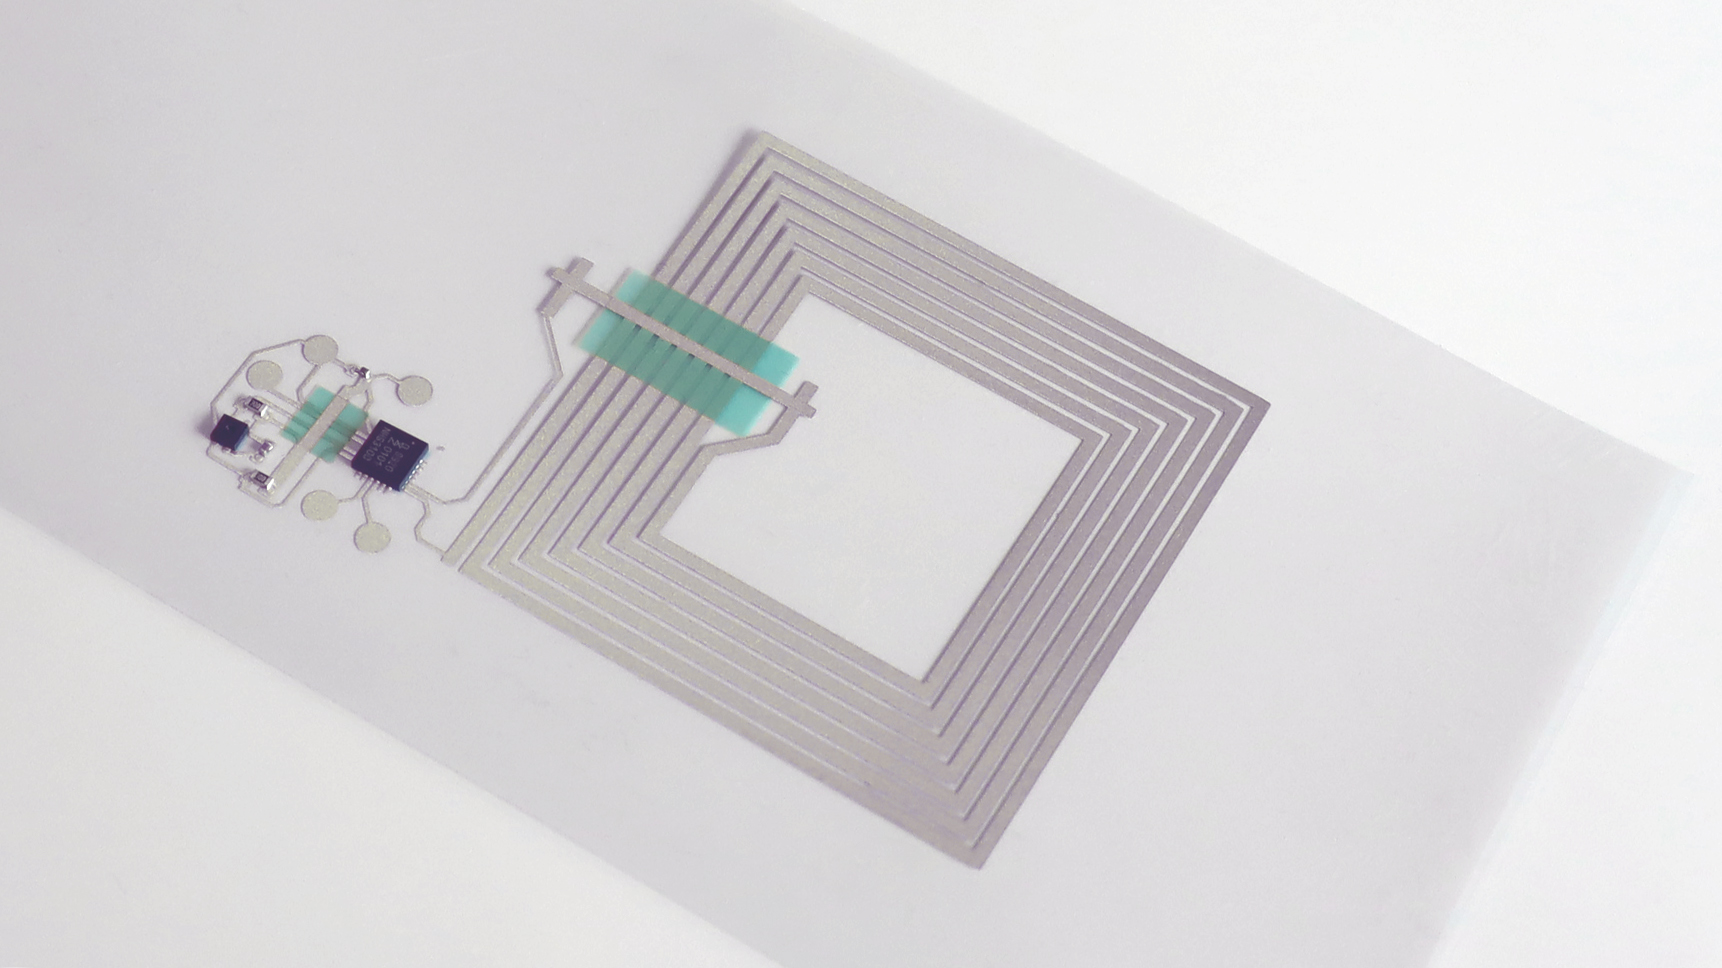 Circuitos impresos de electronica impresa desarrollados en LEE-BED por ITENE